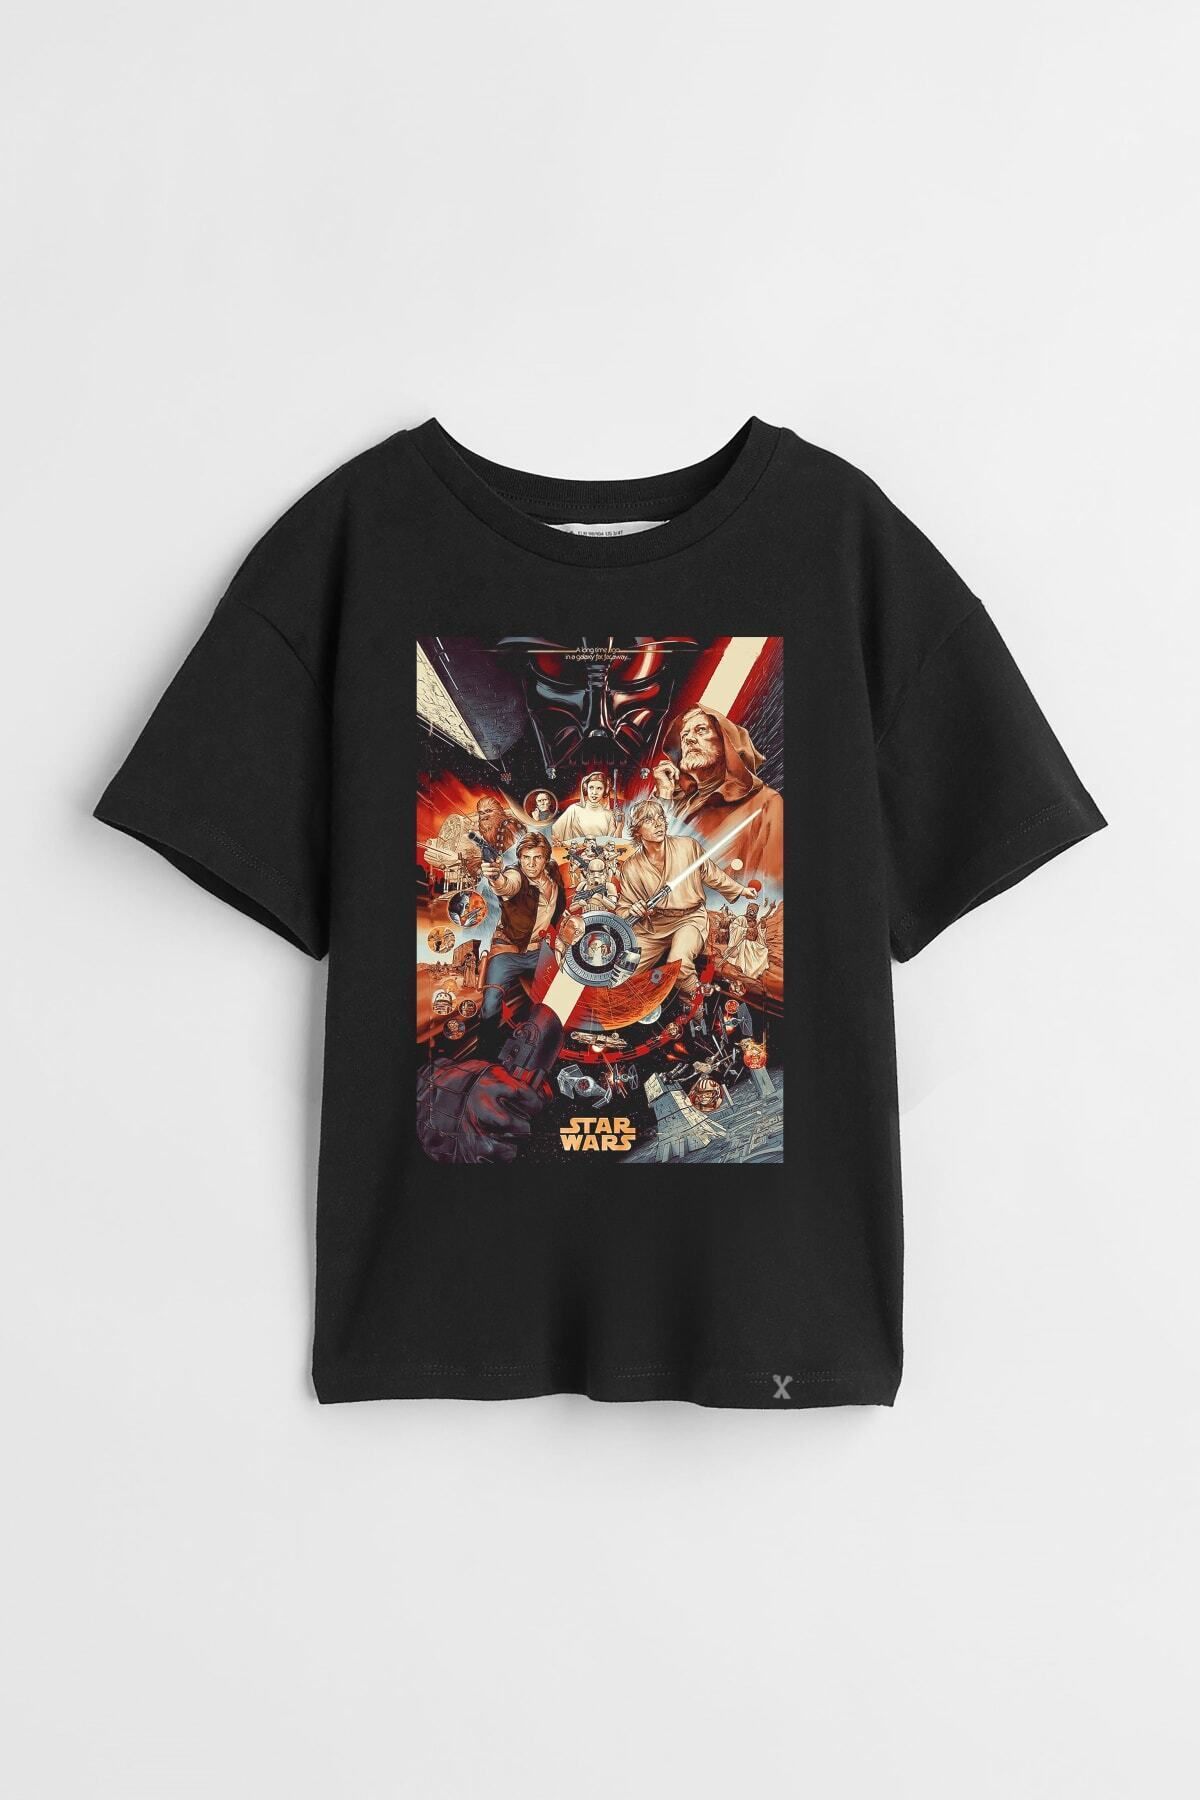 Darkia Star Wars Karakterleri Uzay Özel Tasarım Baskılı Unisex Çocuk Tişört